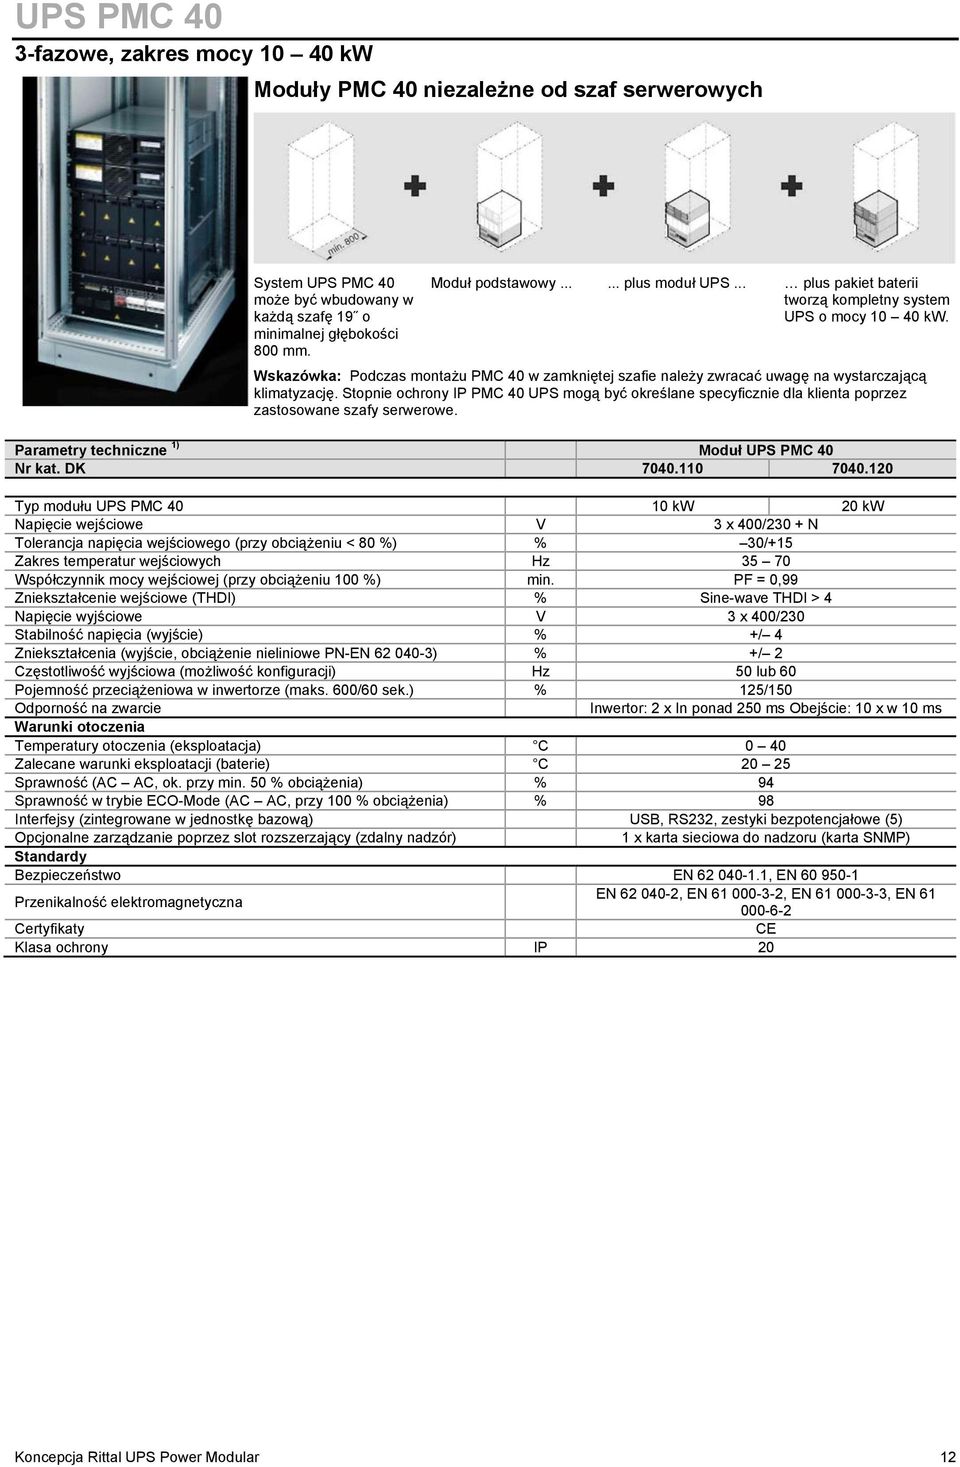 Stopnie ochrony IP PMC 40 UPS mogą być określane specyficznie dla klienta poprzez zastosowane szafy serwerowe. Parametry techniczne 1) Moduł UPS PMC 40 Nr kat. DK 7040.110 7040.